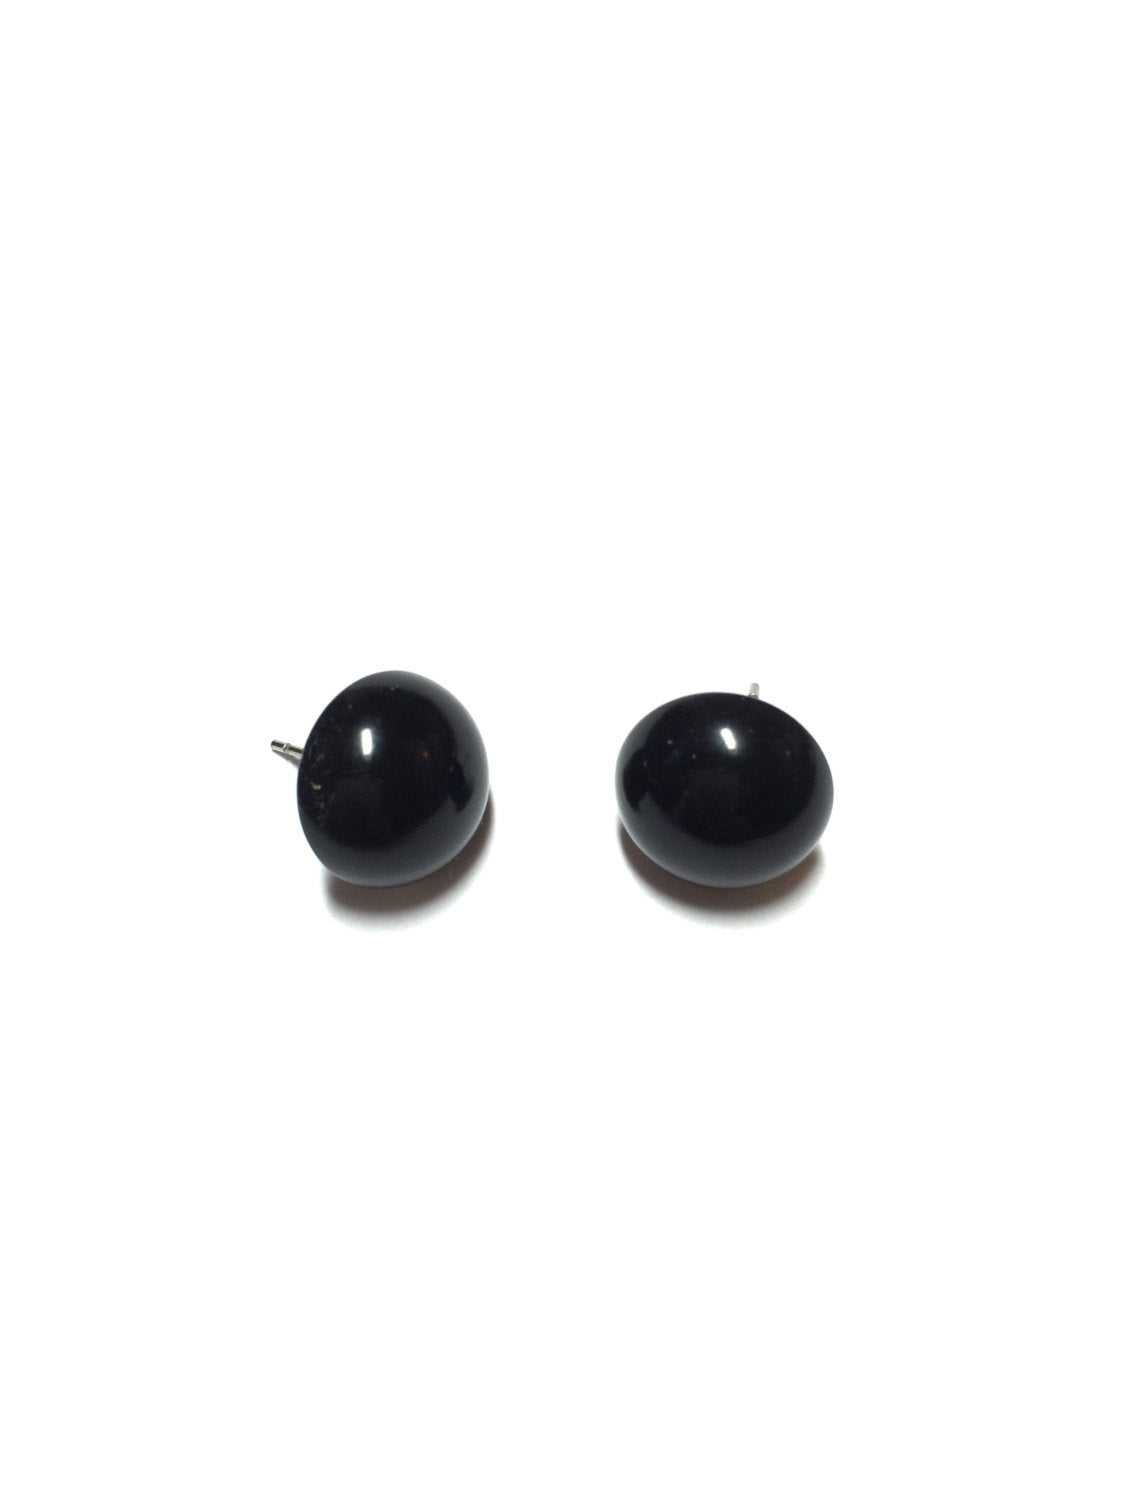 leetie black earrings